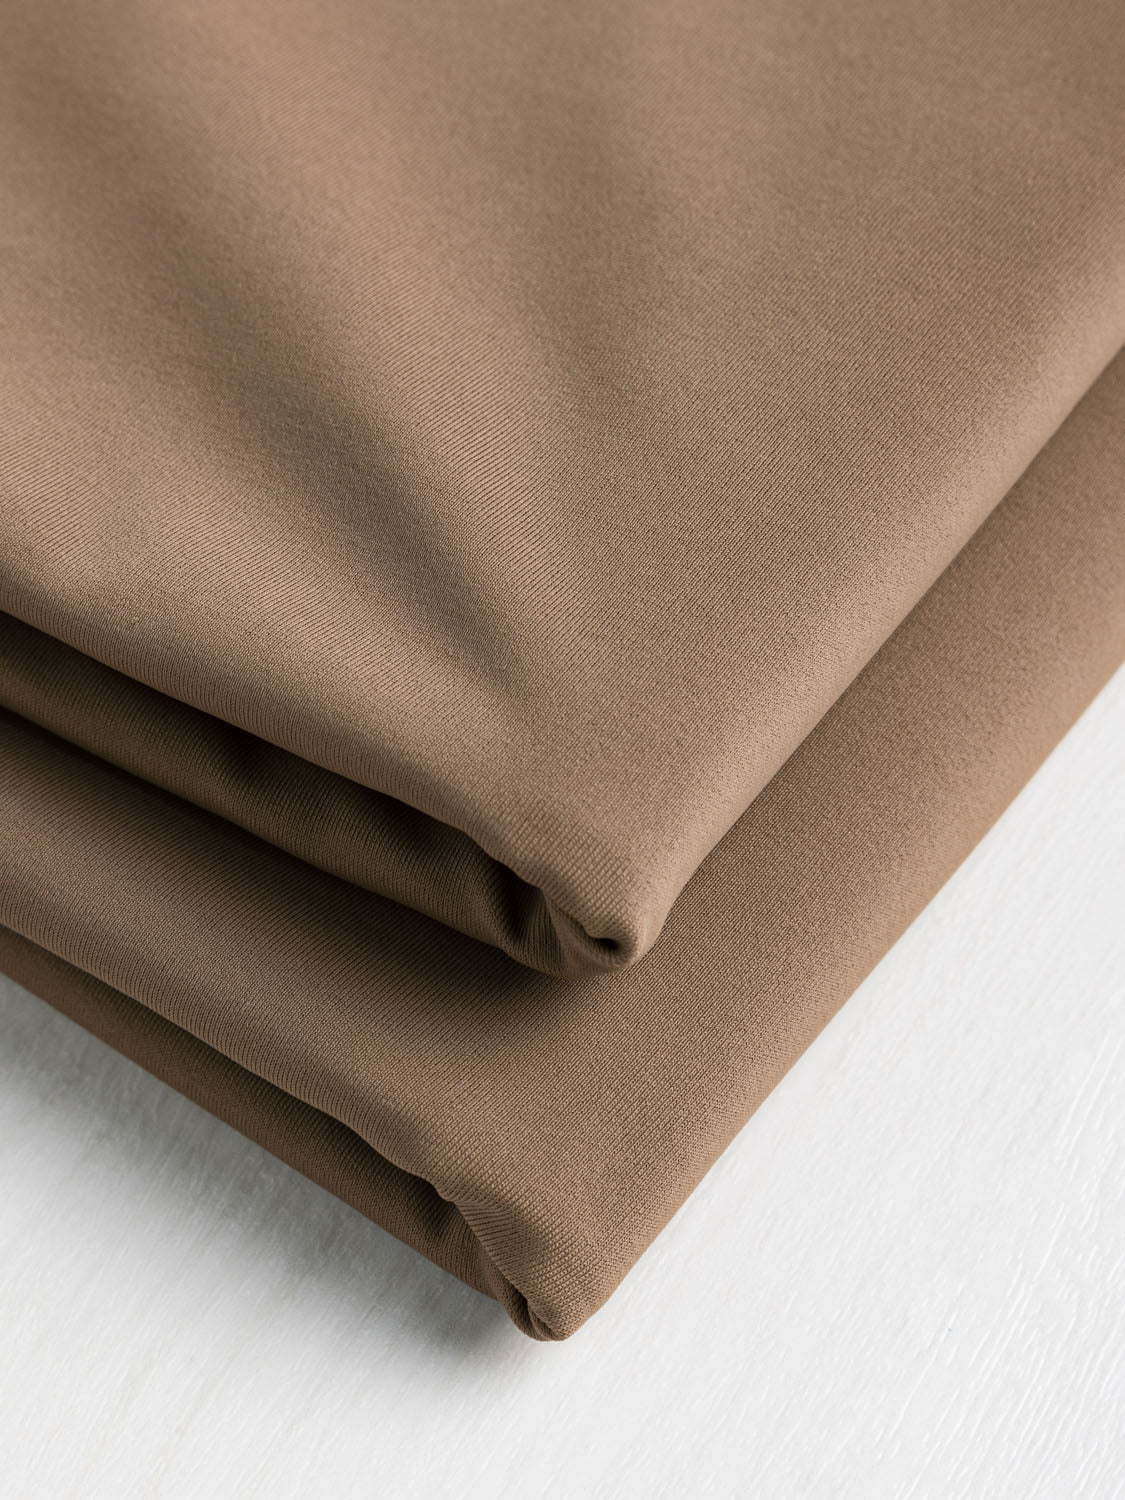 Recycled Nylon Spandex Swimwear Fabric - Wet Sand | Core Fabrics